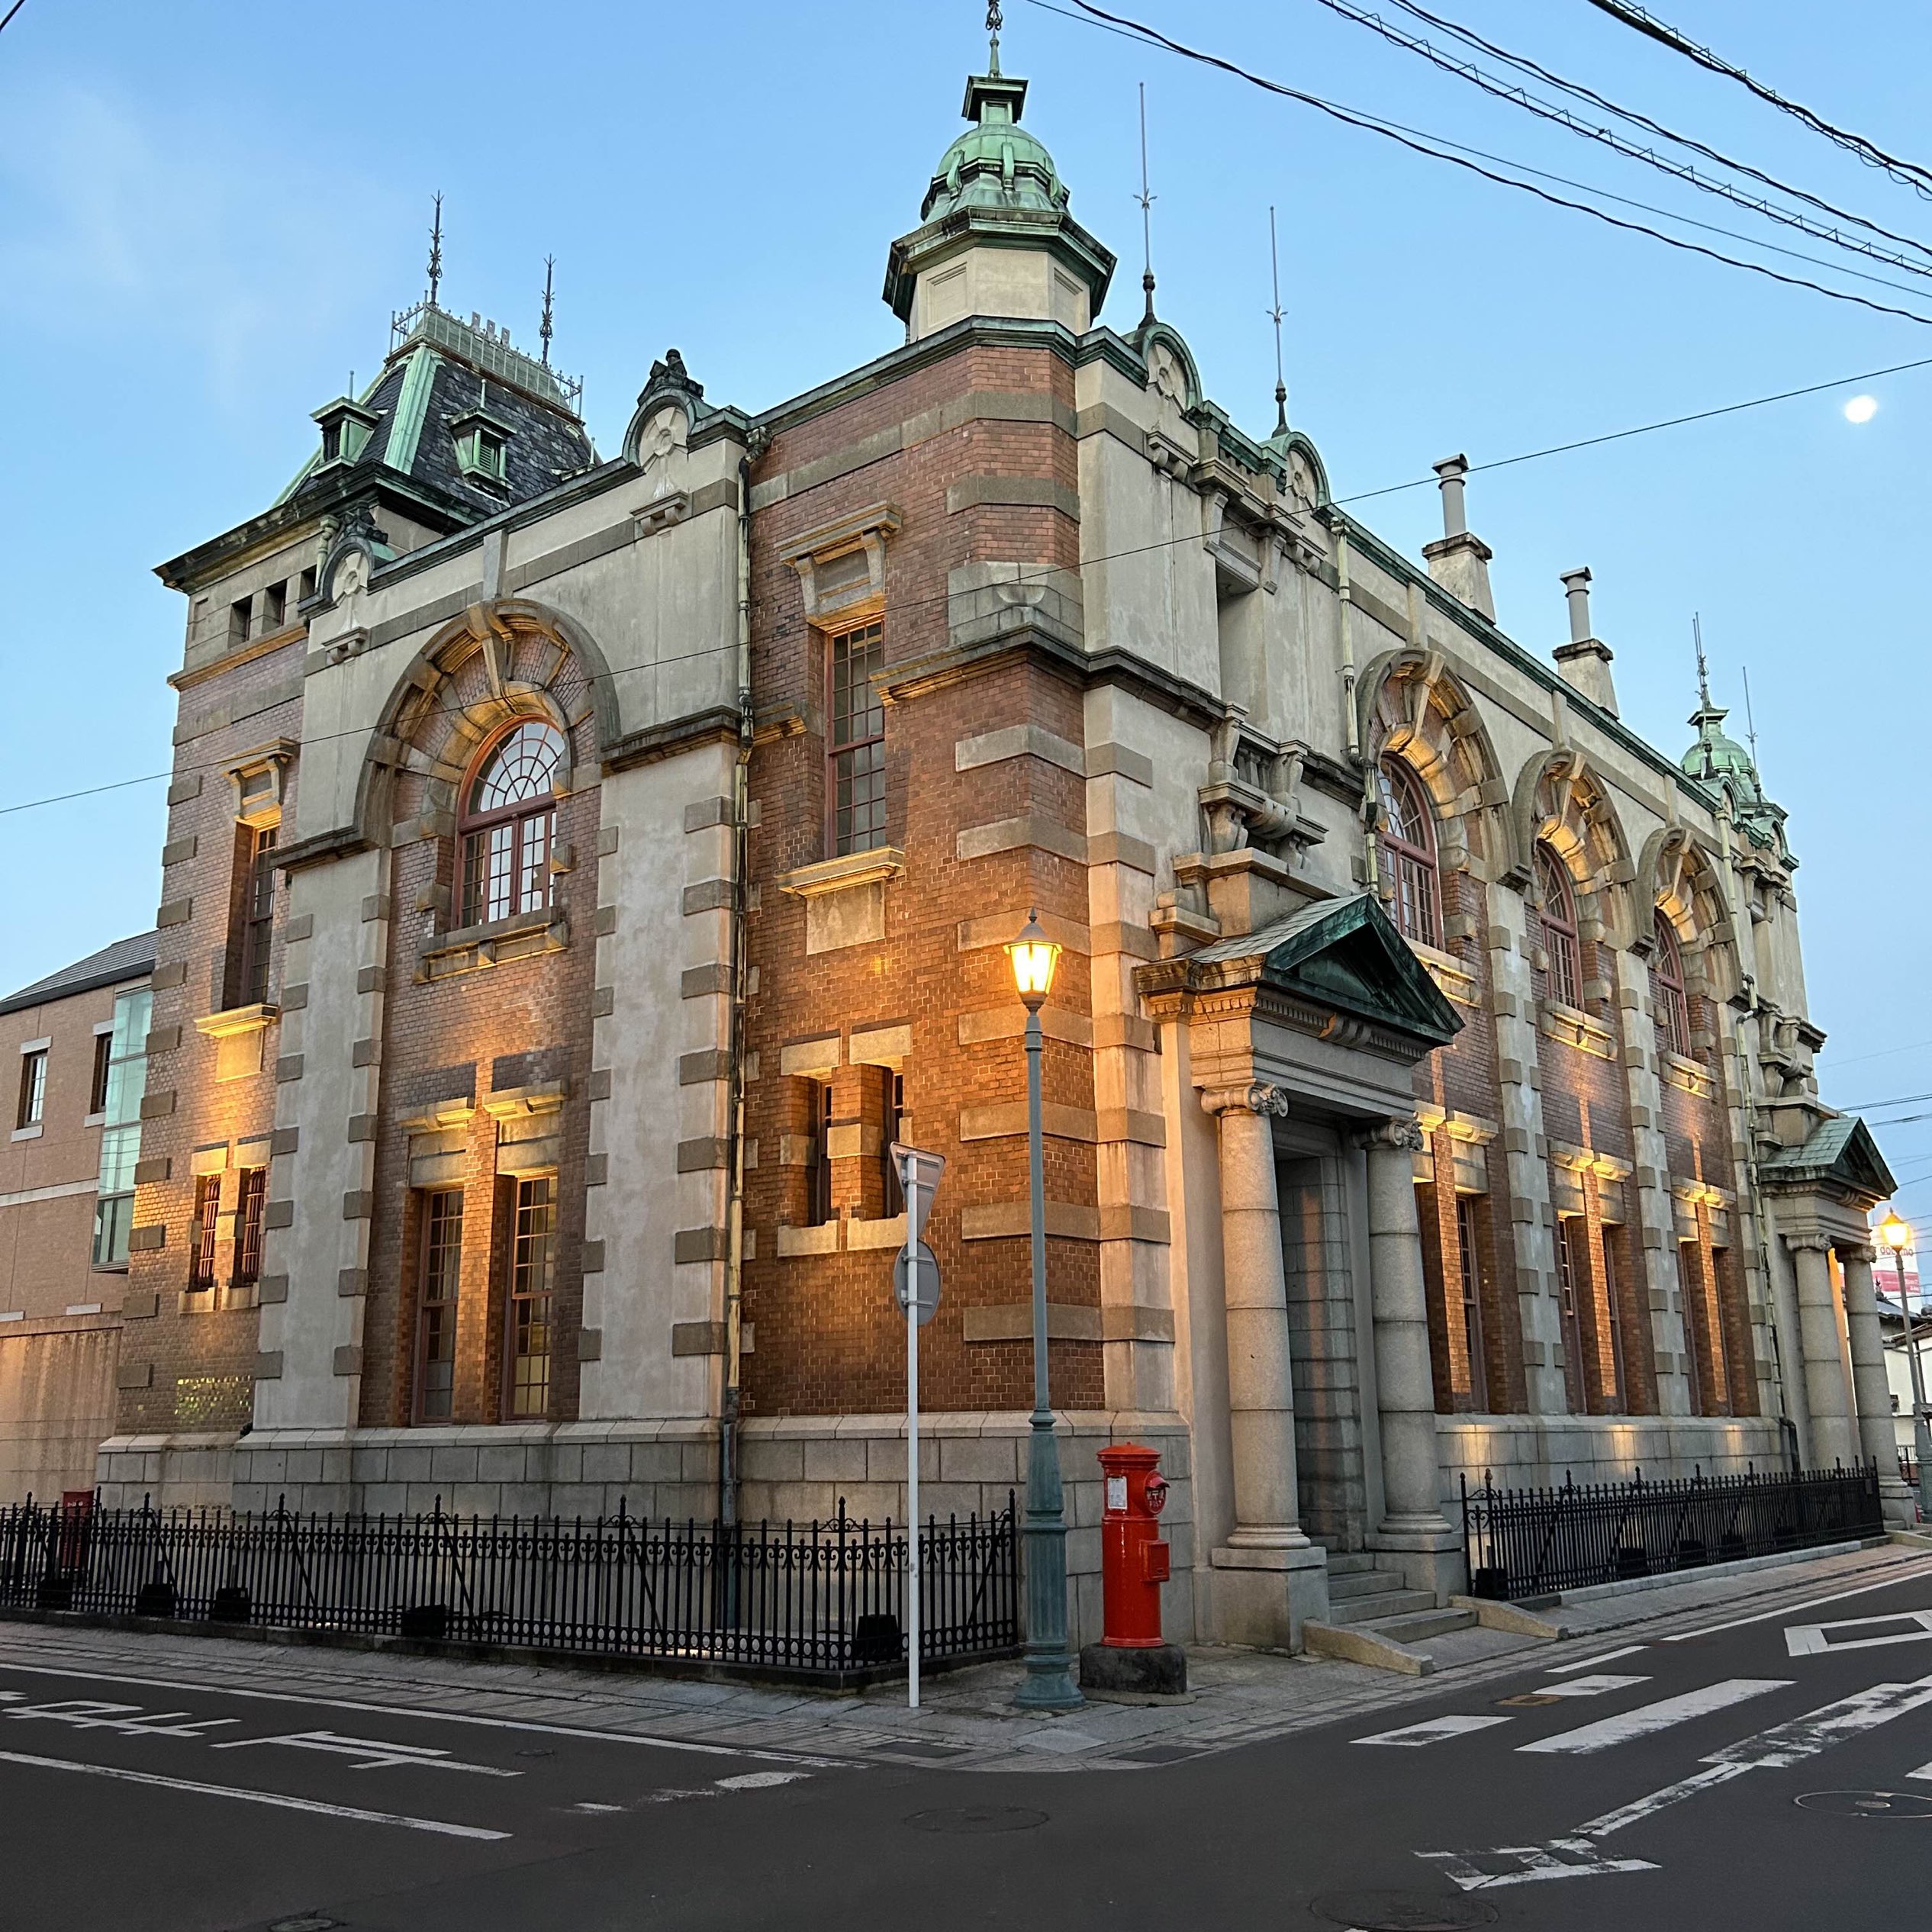 旧唐津银行 辰野金吾纪念馆  您可以充分享受明治时代的西式建筑。 最近,我刚刚在装修后看到了东京站,